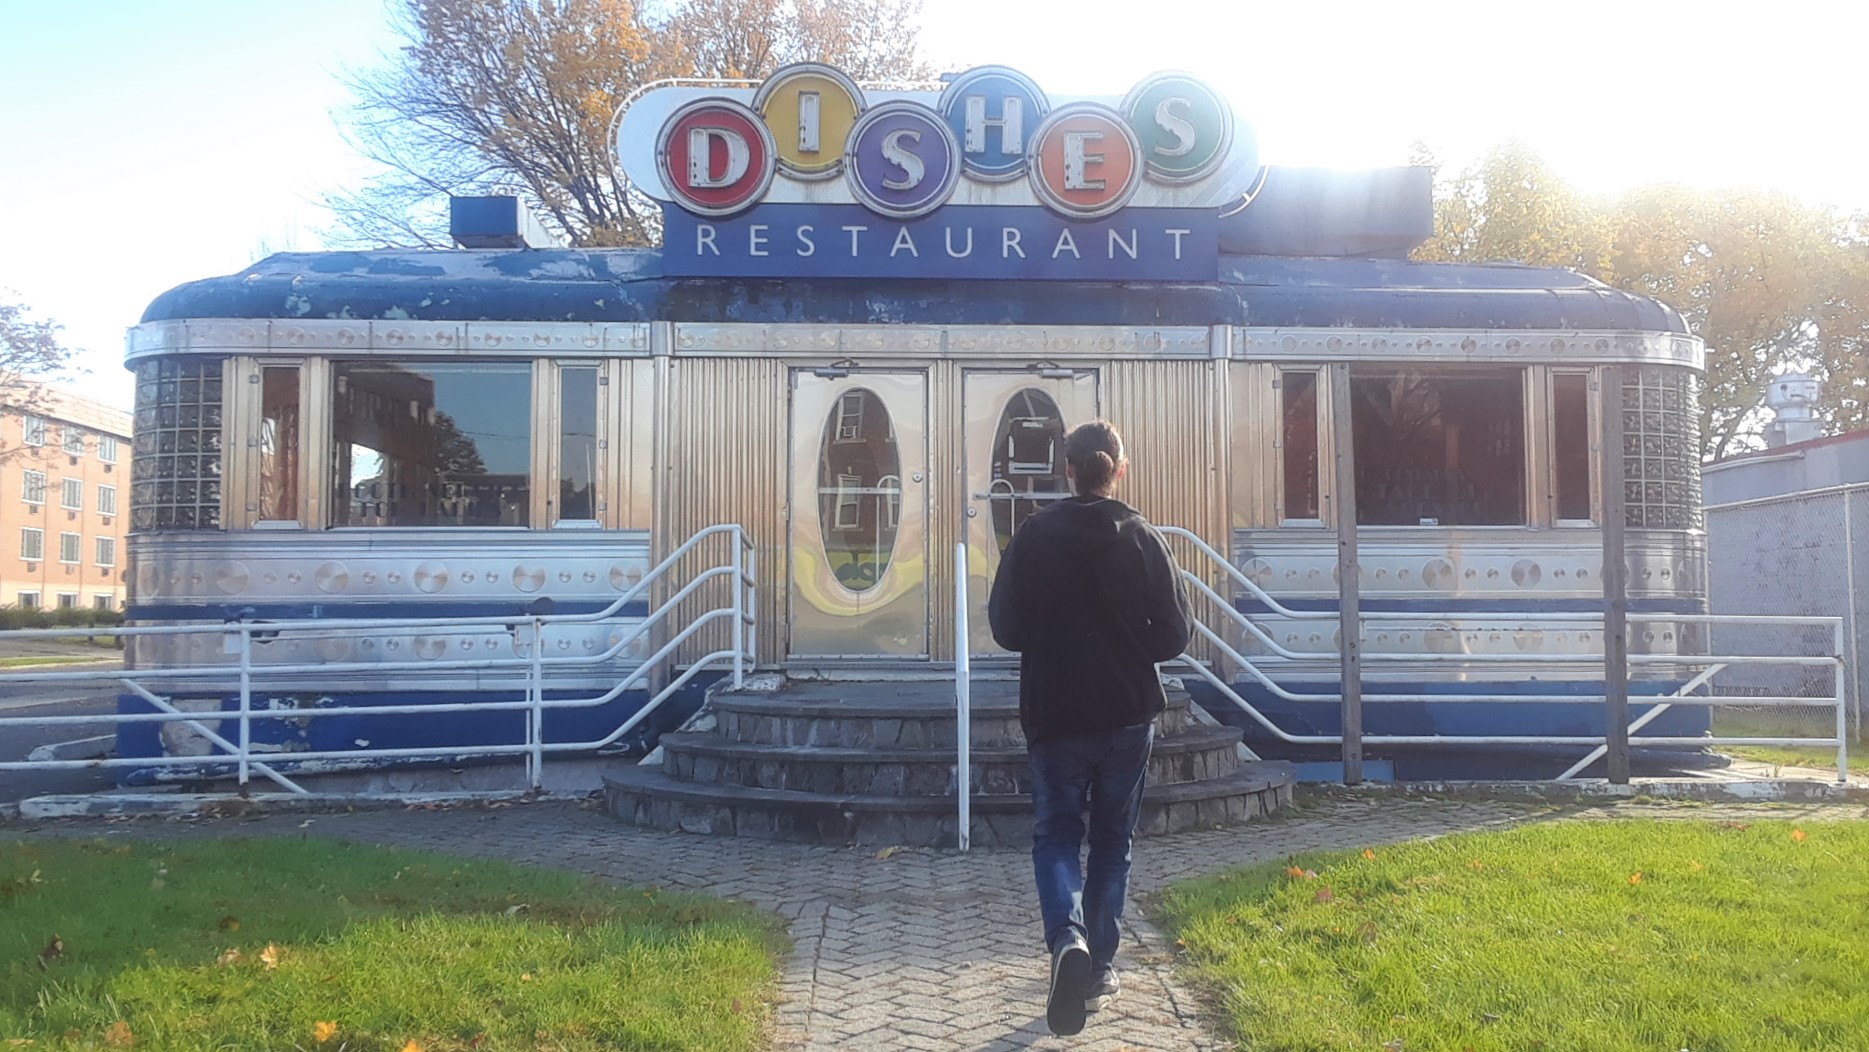 Dishes Restaurant - Abandoned Diner